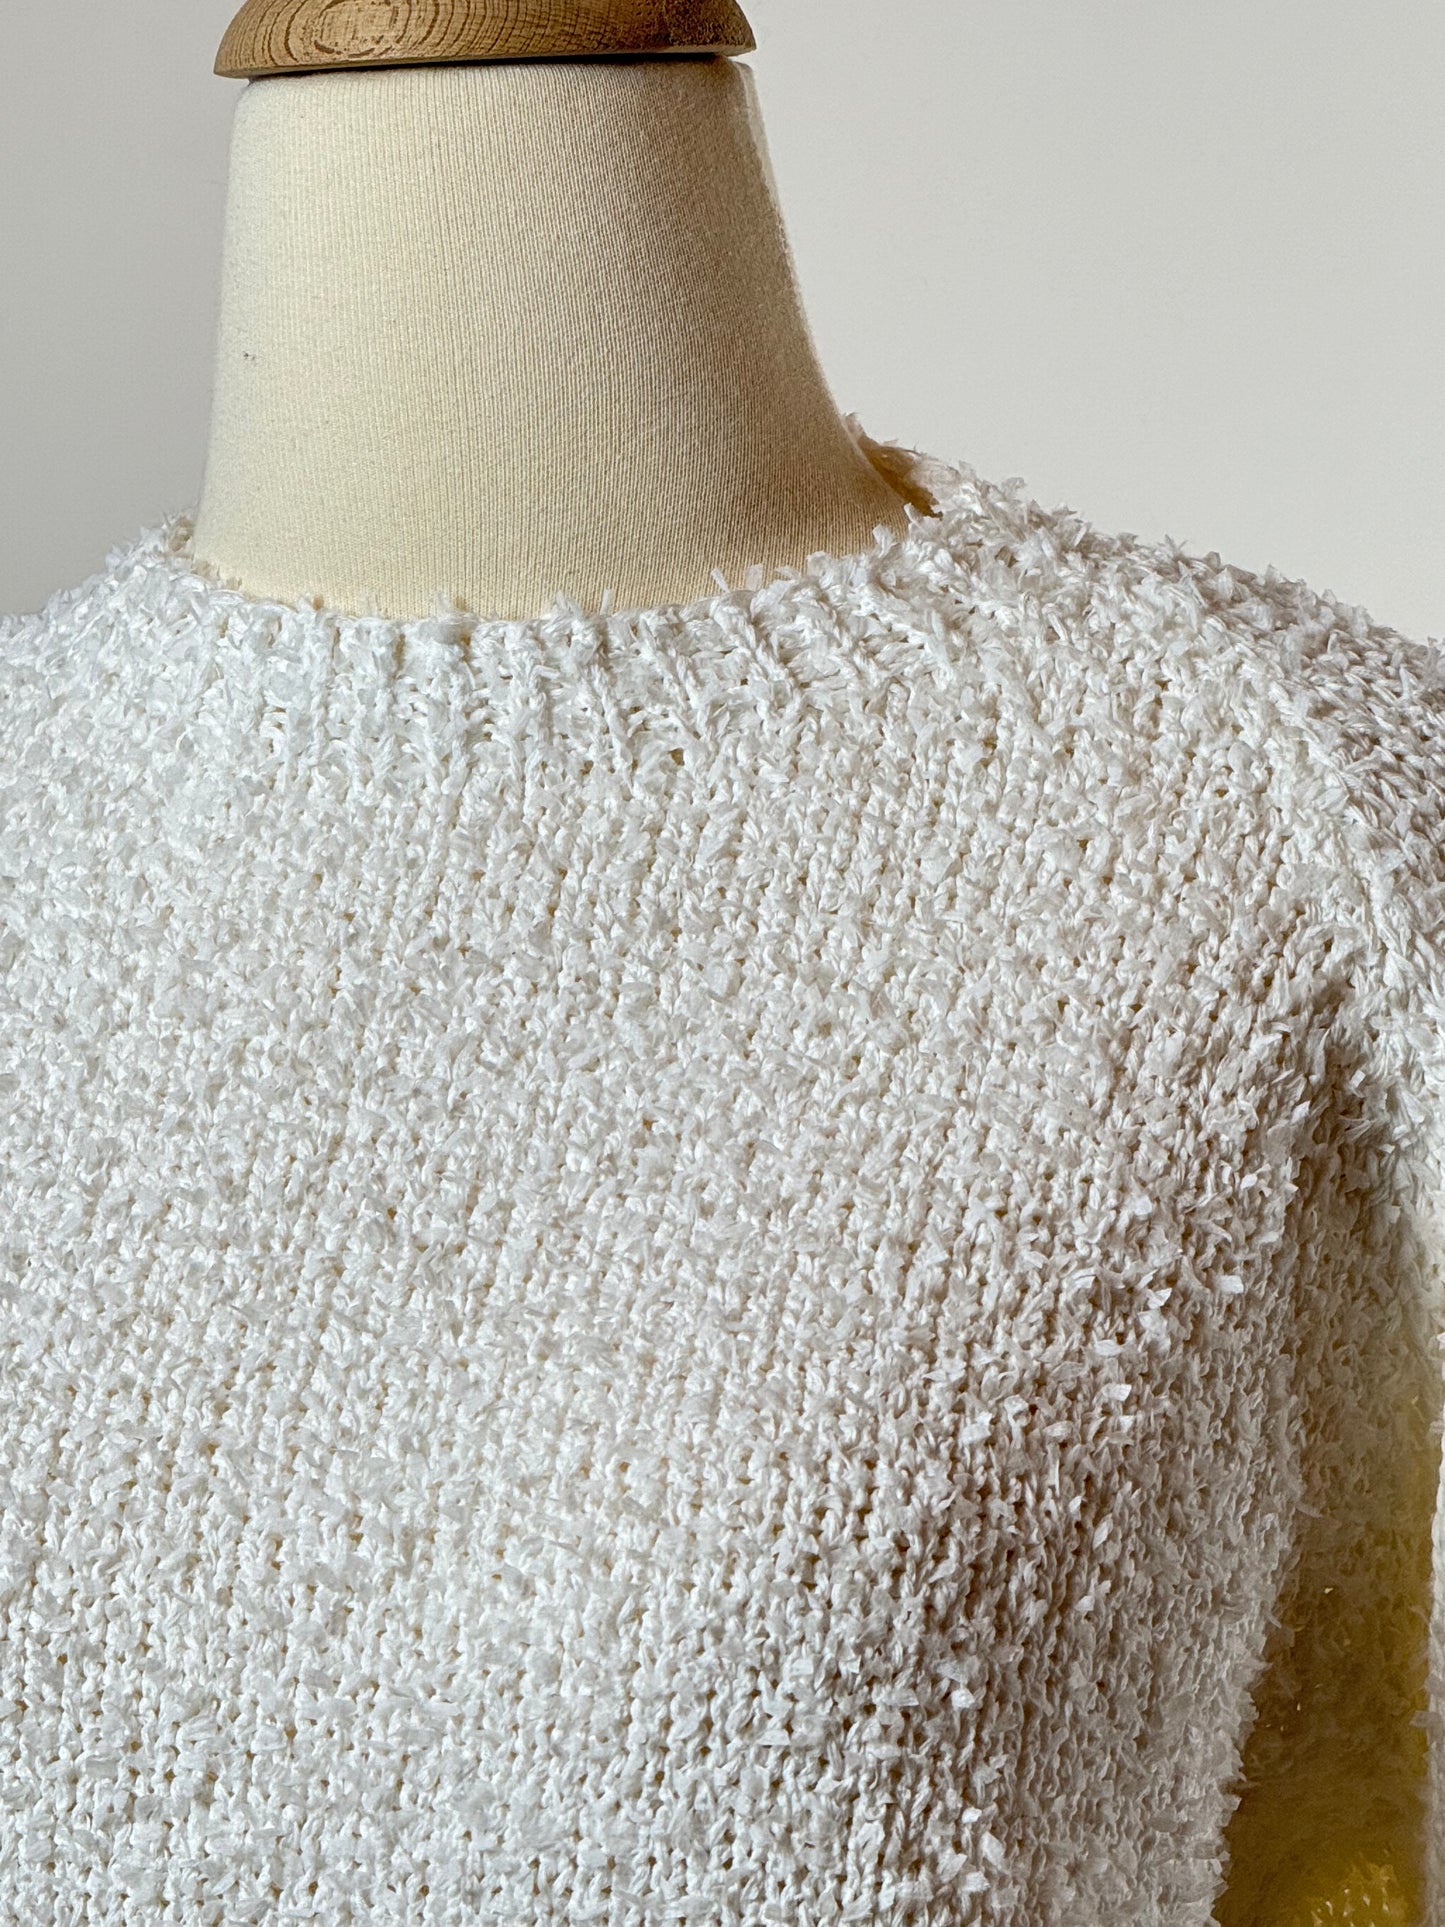 კომპოზიტური პულოვერი/Composite cotton summer pullover